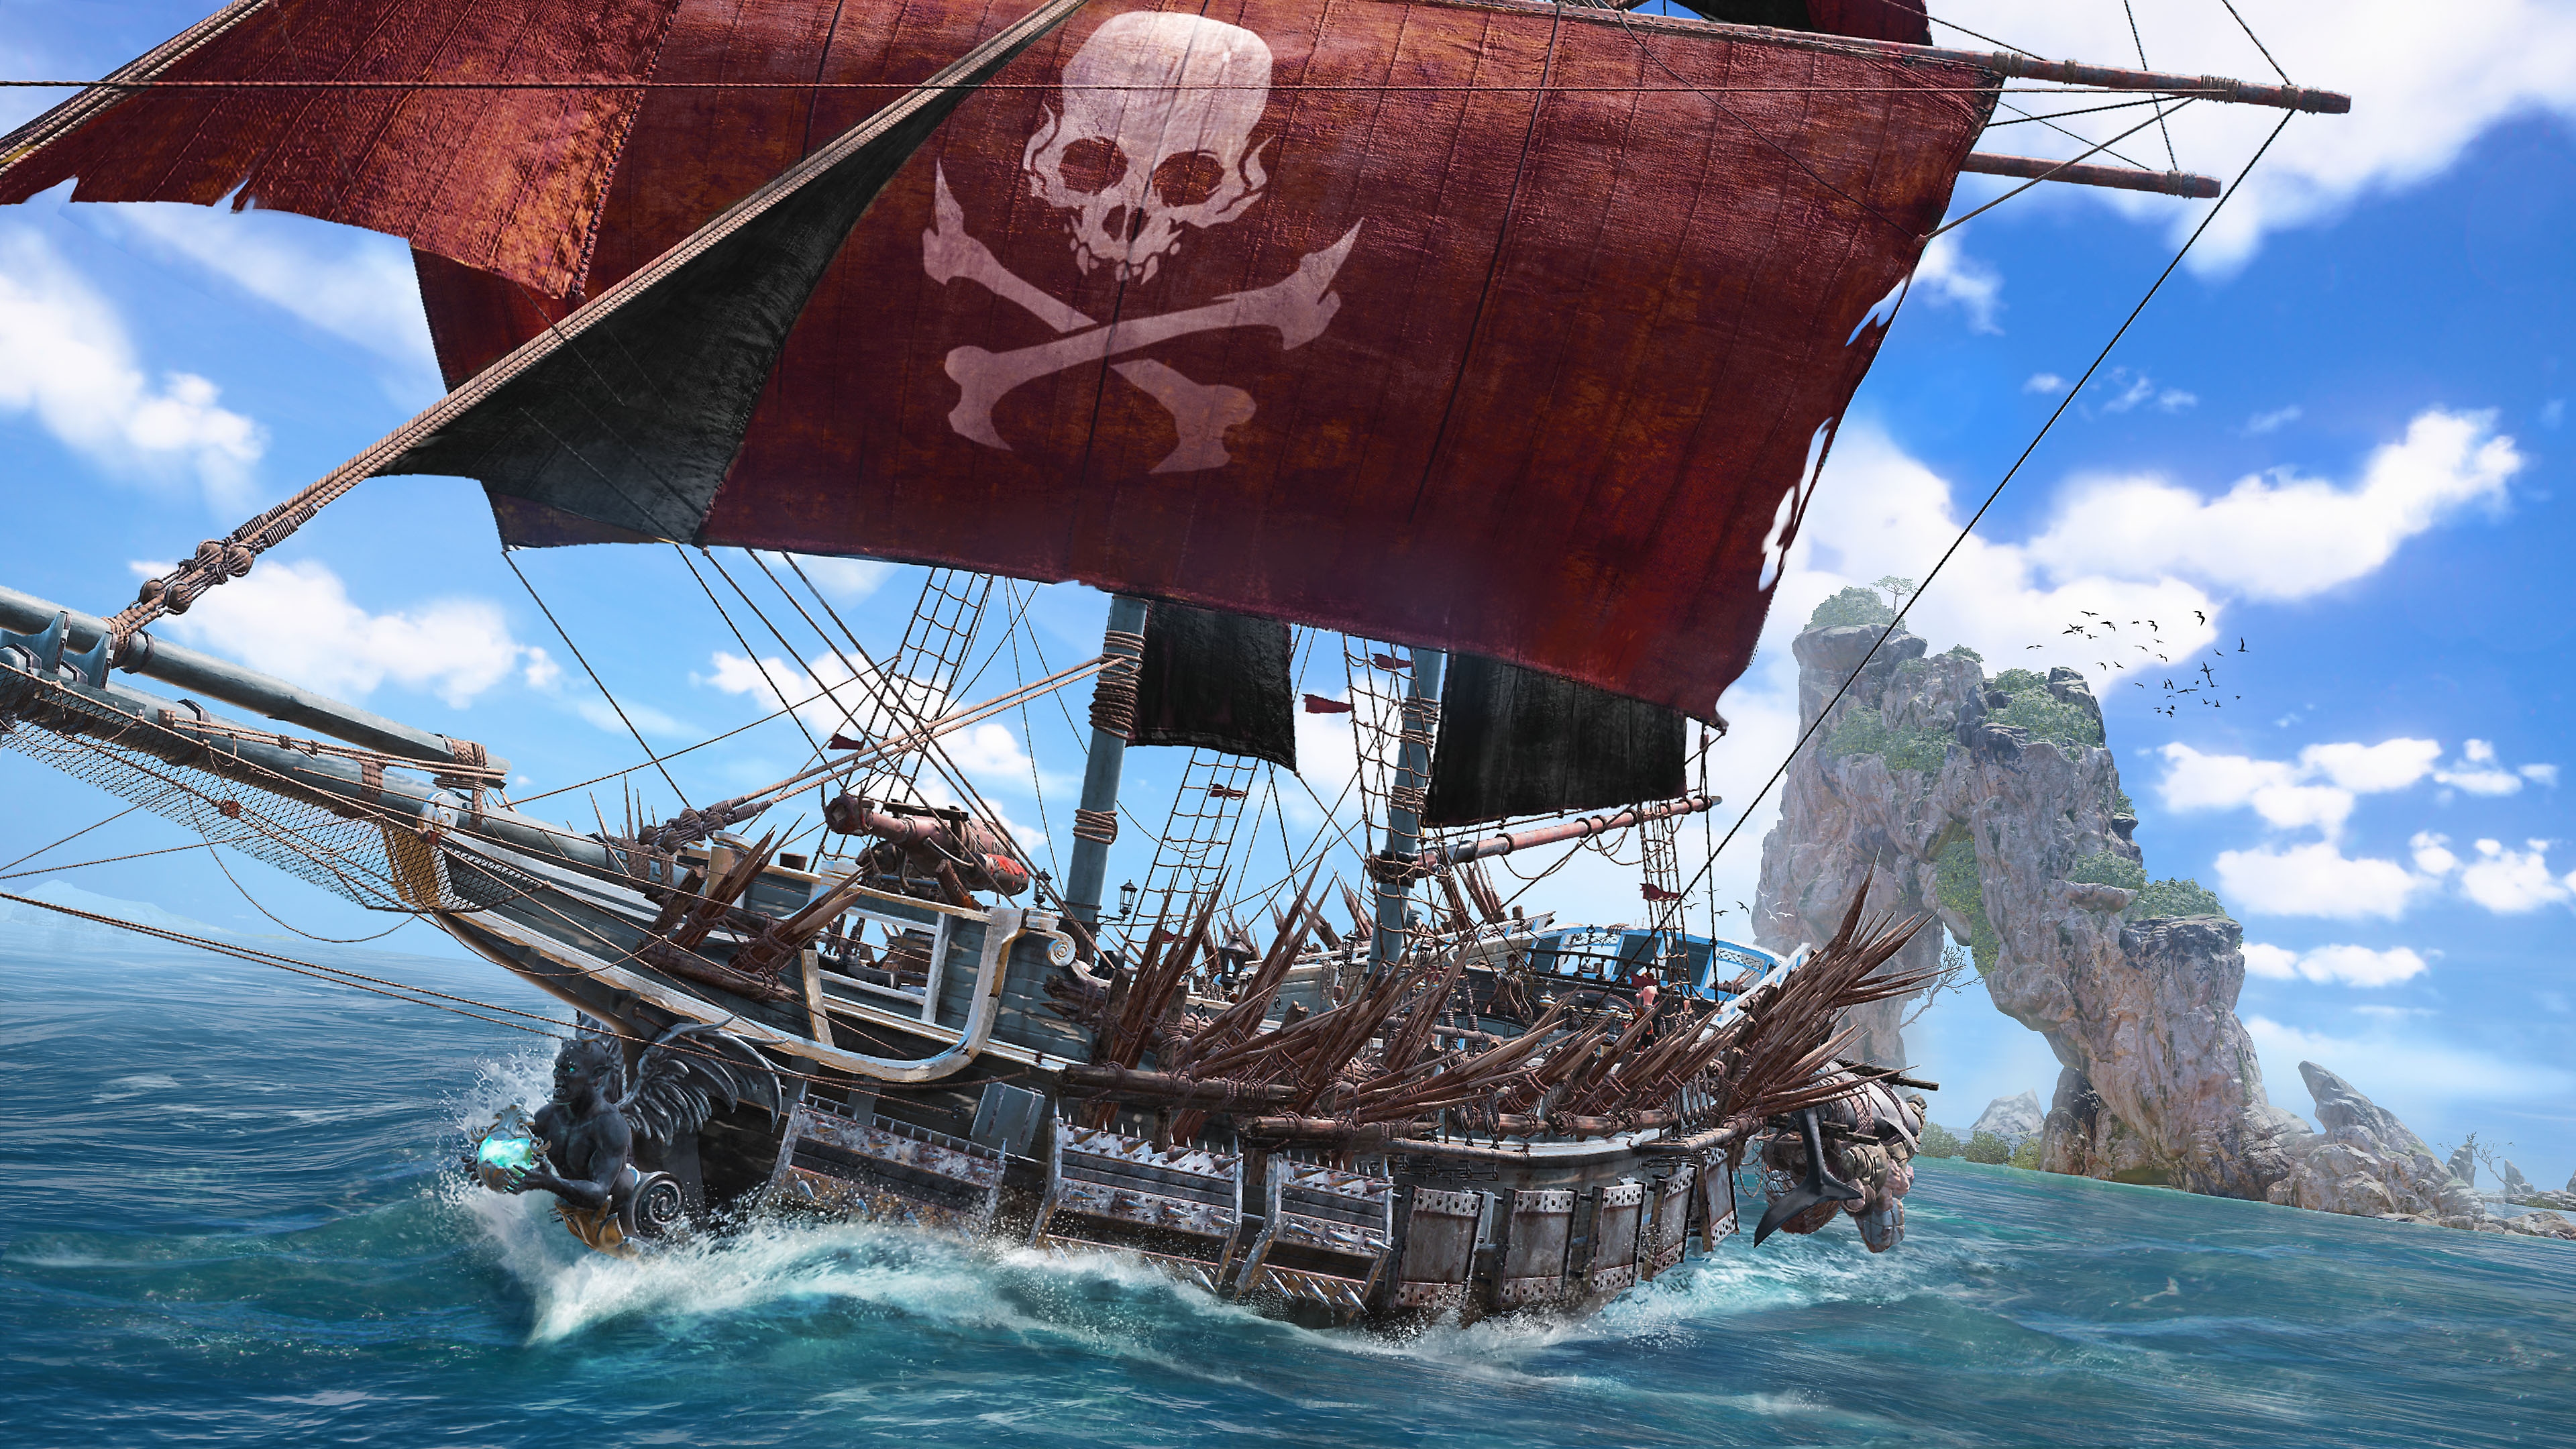 《碧海黑帆》截屏，显示红色主帆上有骷髅头和骨头交叉图形的海盗船